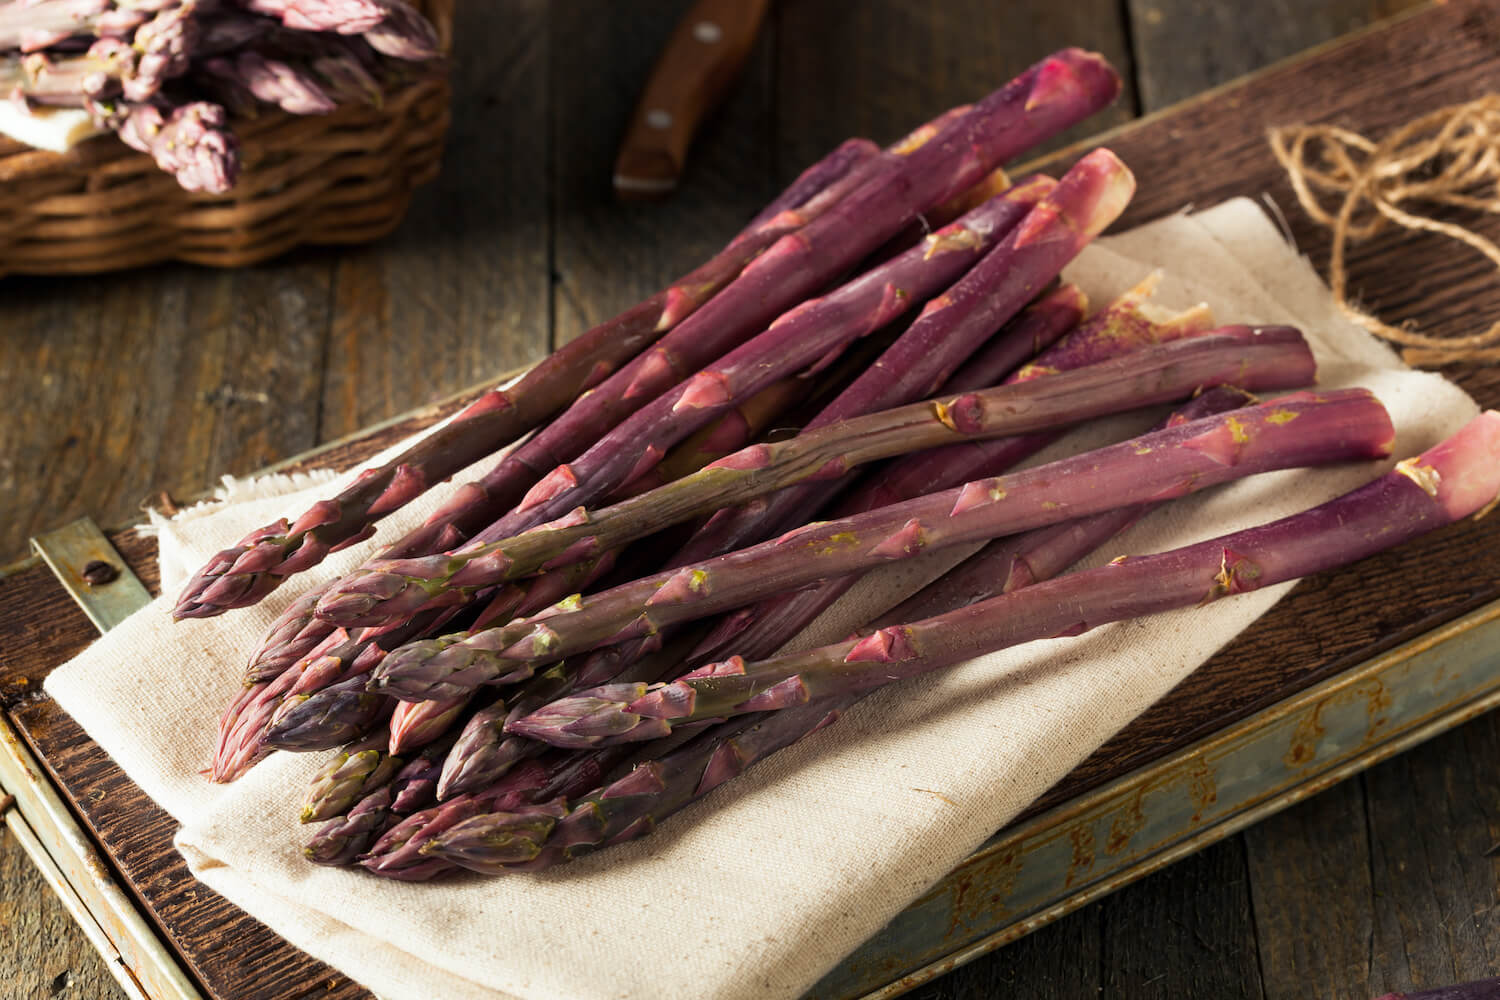 Purple asparagus on a cloth